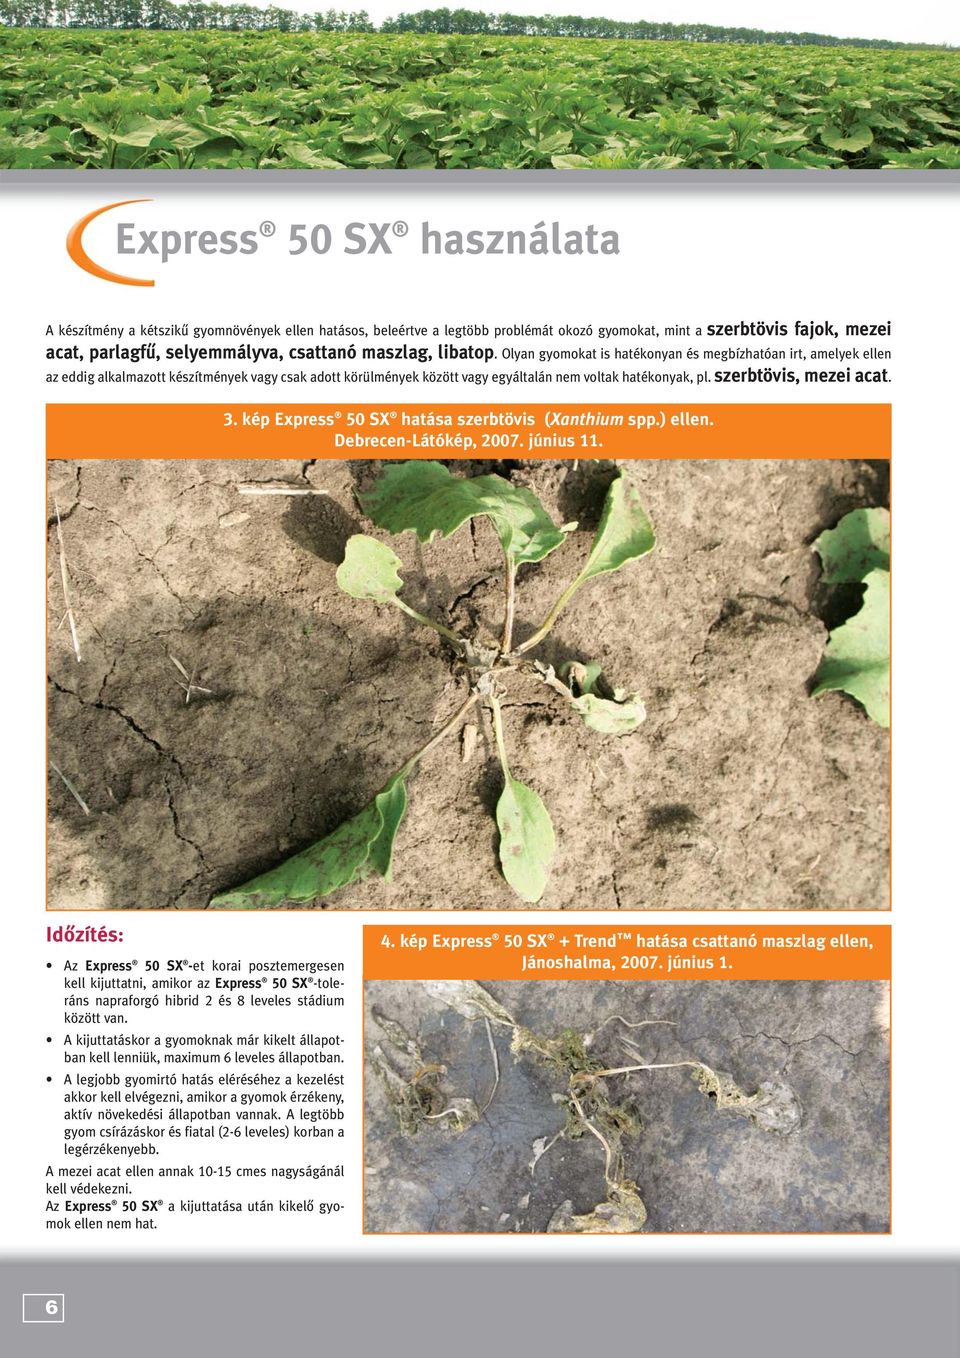 szerbtövis, mezei acat. 3. kép Express 50 SX hatása szerbtövis (Xanthium spp.) ellen. Debrecen-Látókép, 2007. június 11.